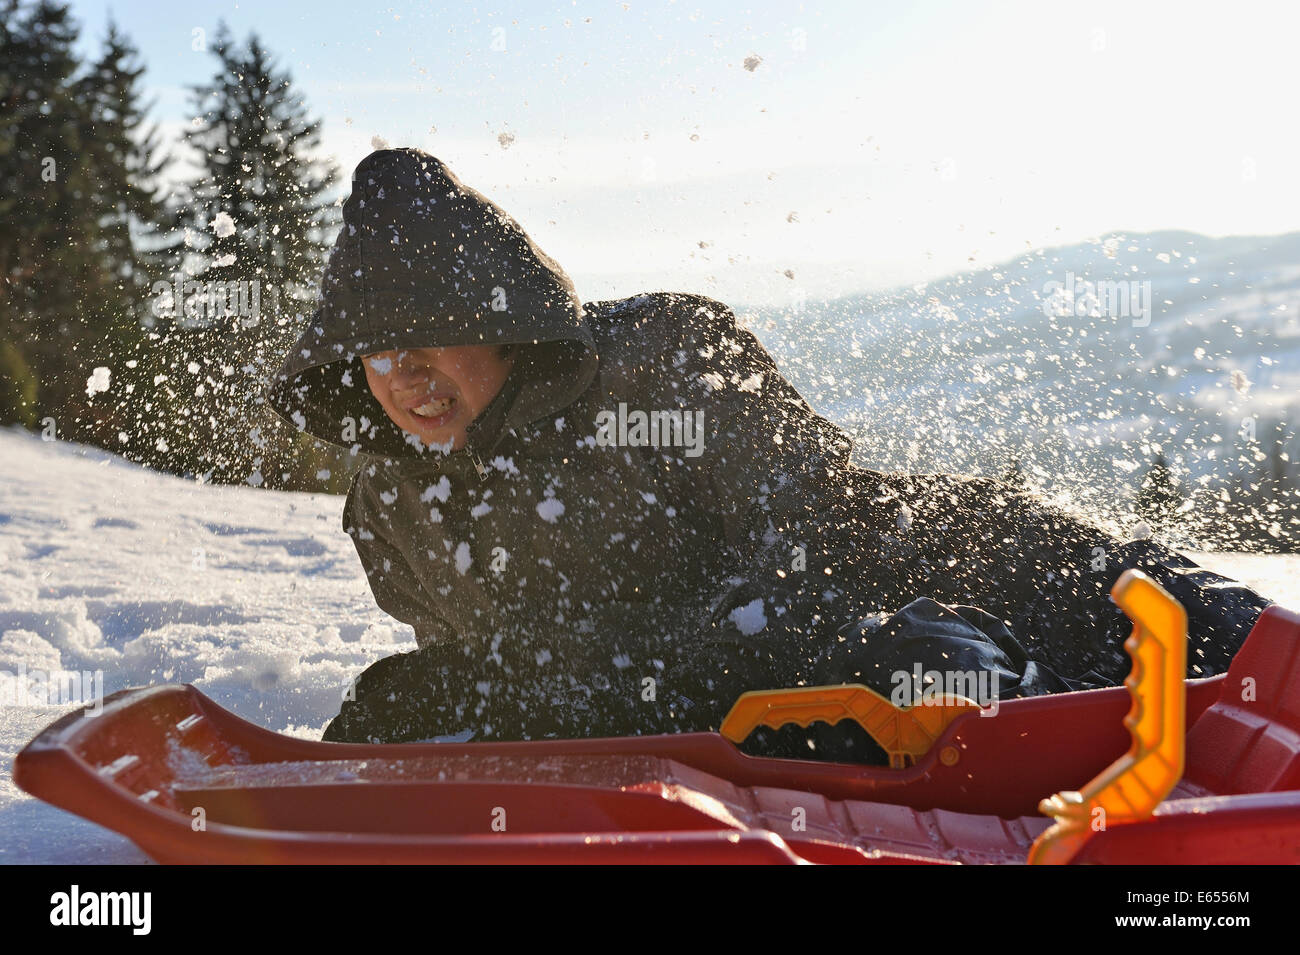 Teenage boy tomber de son traîneau sur la neige dans un paysage d'hiver Banque D'Images